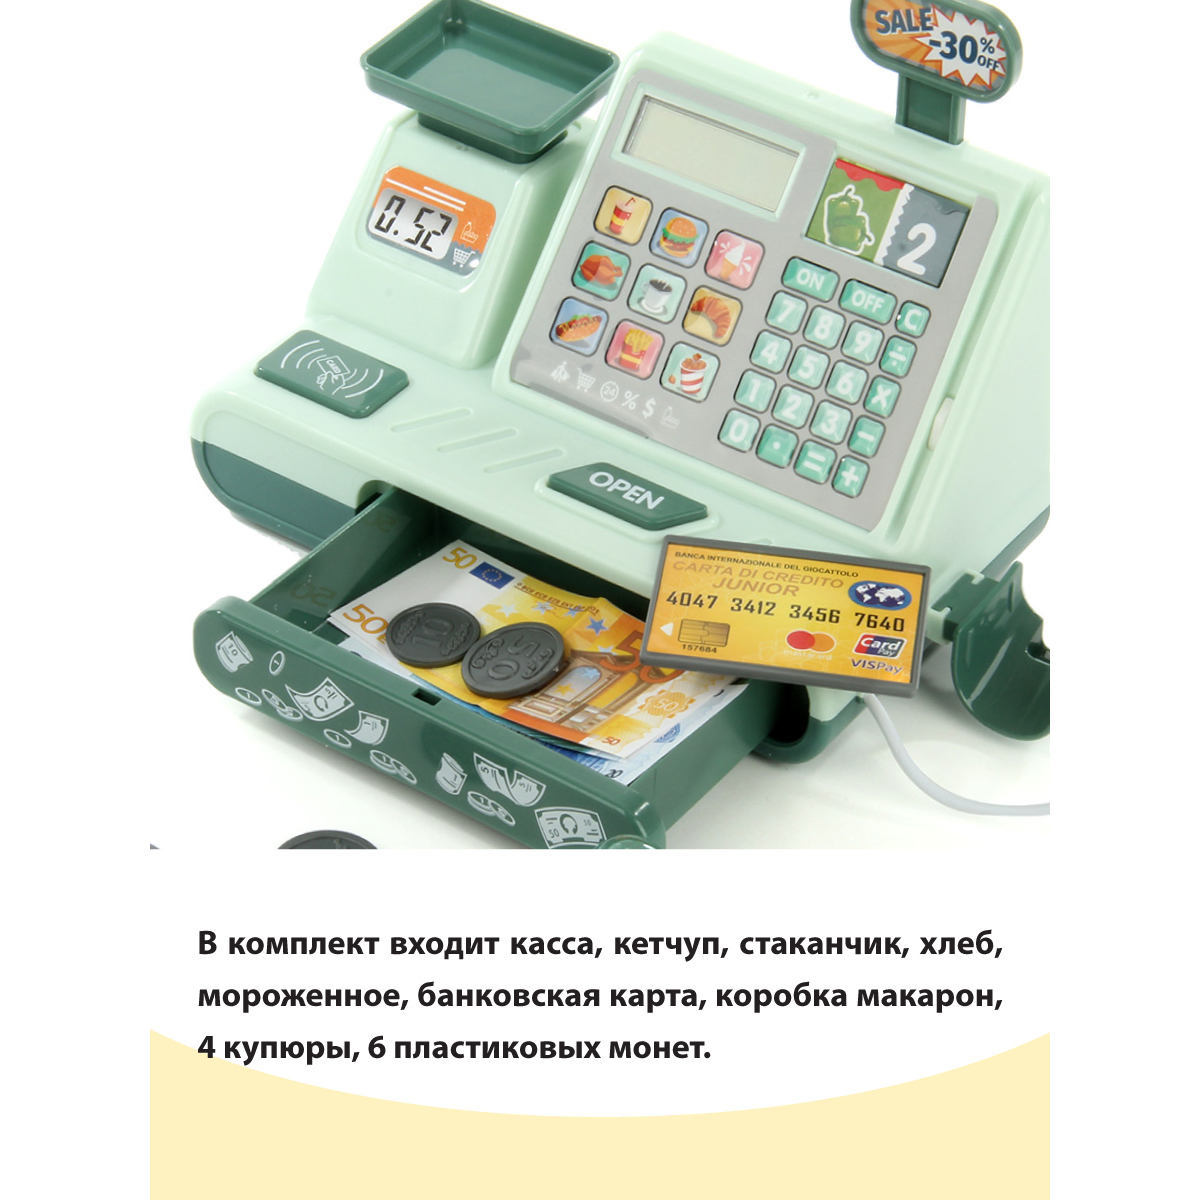 Касса детская Veld Co сканер калькулятор продукты деньги свет звуки - фото 4